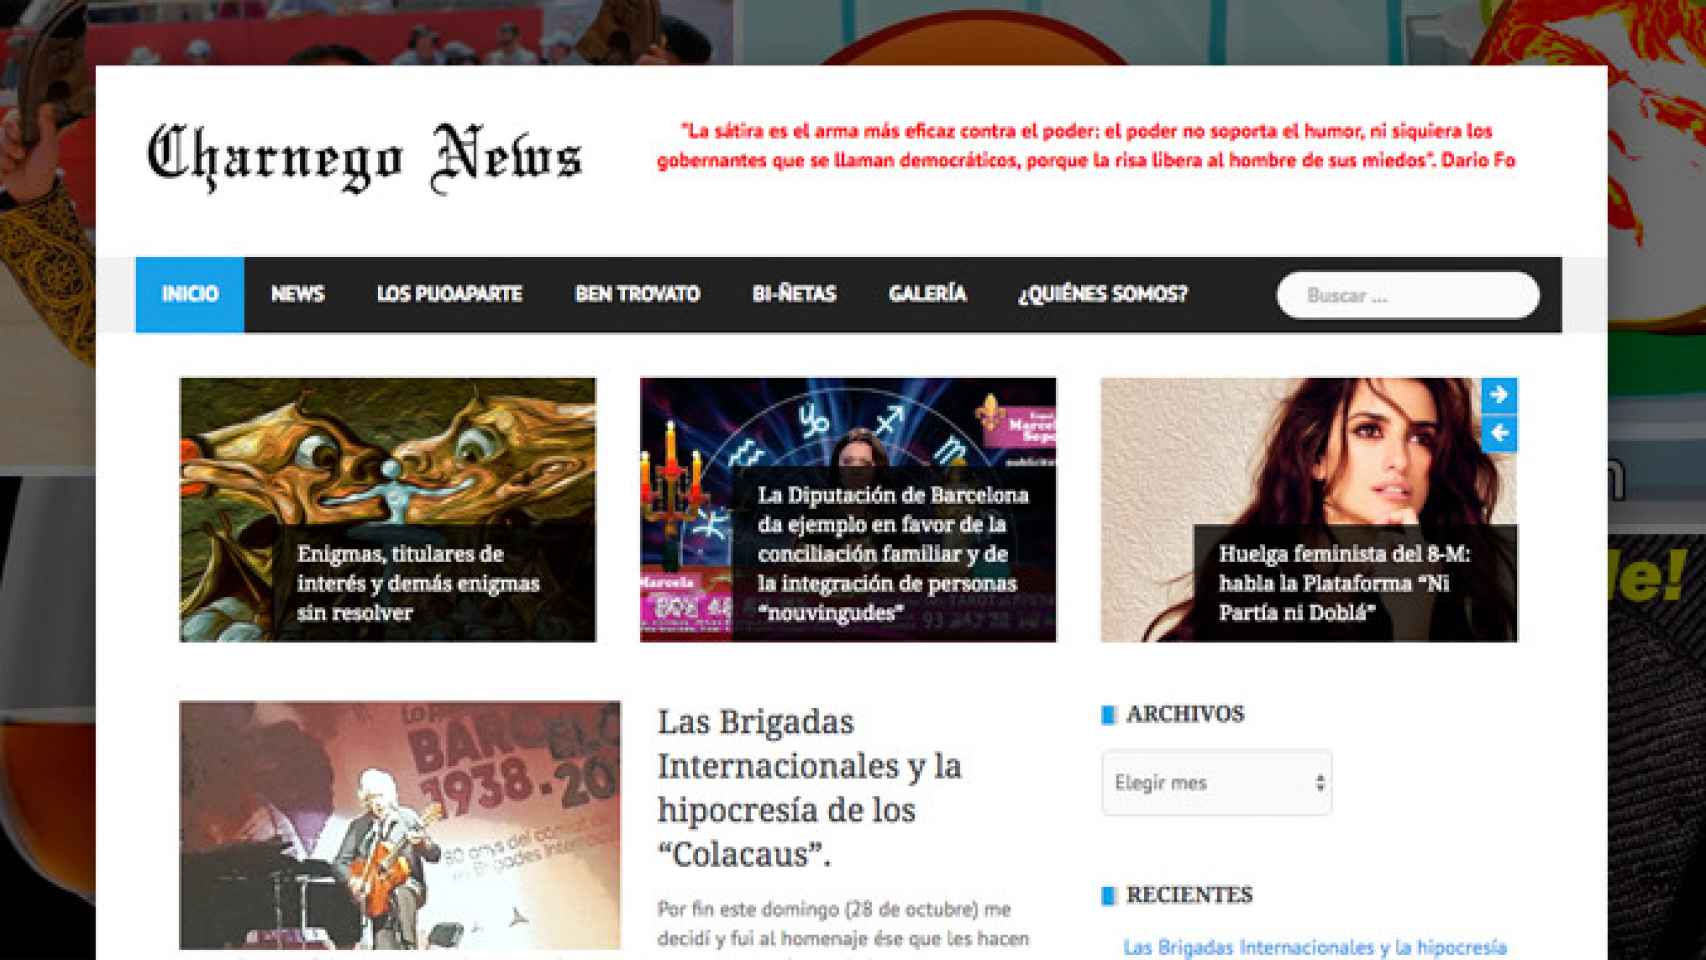 Captura de la web Charnego News con algunos de sus fotomontajes / CG